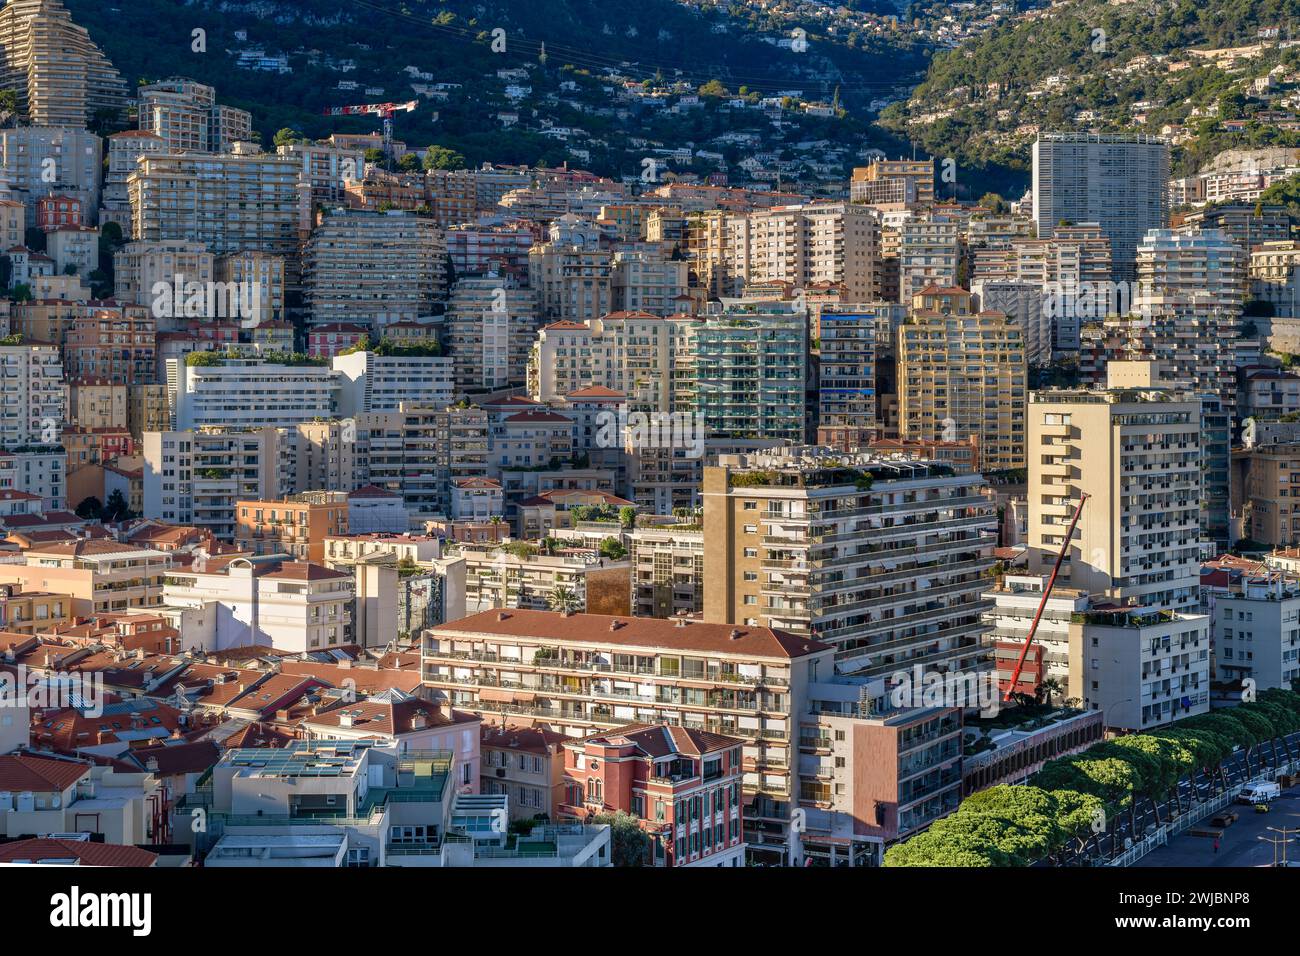 Monte Carlo nel Principato di Monaco. Ville e appartamenti di lusso ricchissimi per i ricchi e famosi. Con strade tortuose che si intrecciano tra alti edifici. Foto Stock